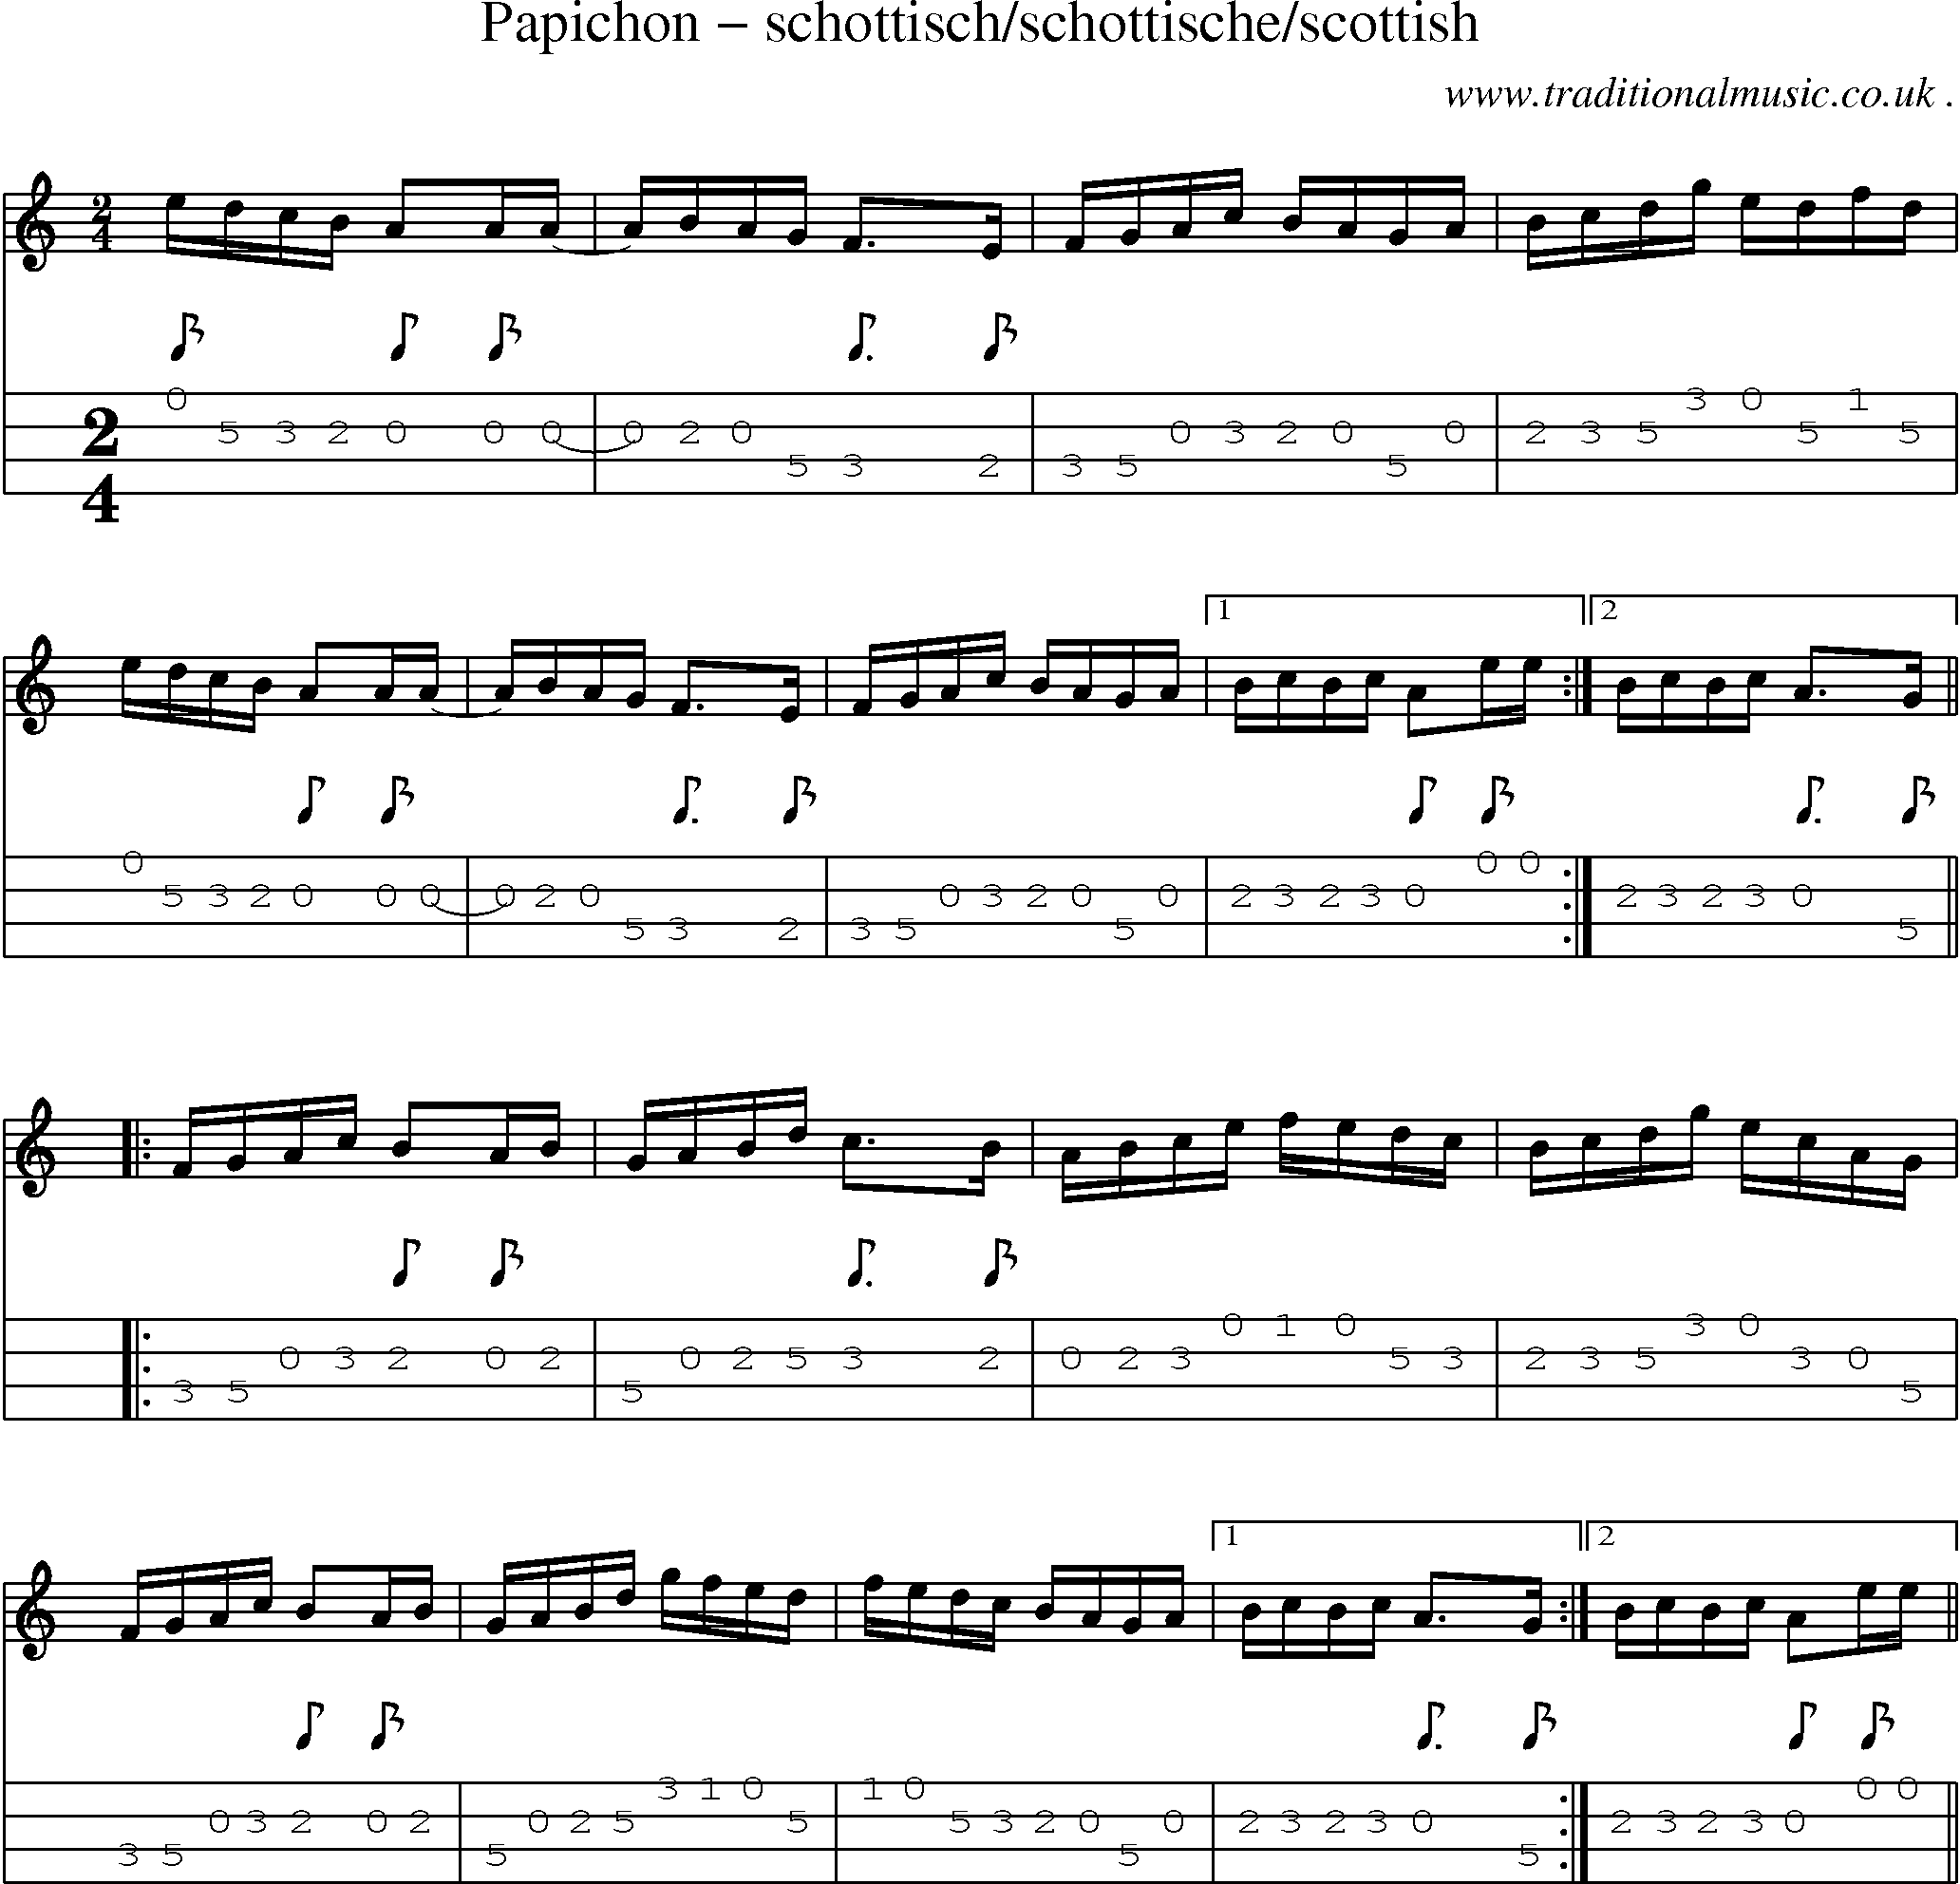 Sheet-Music and Mandolin Tabs for Papichon Schottischschottischescottish